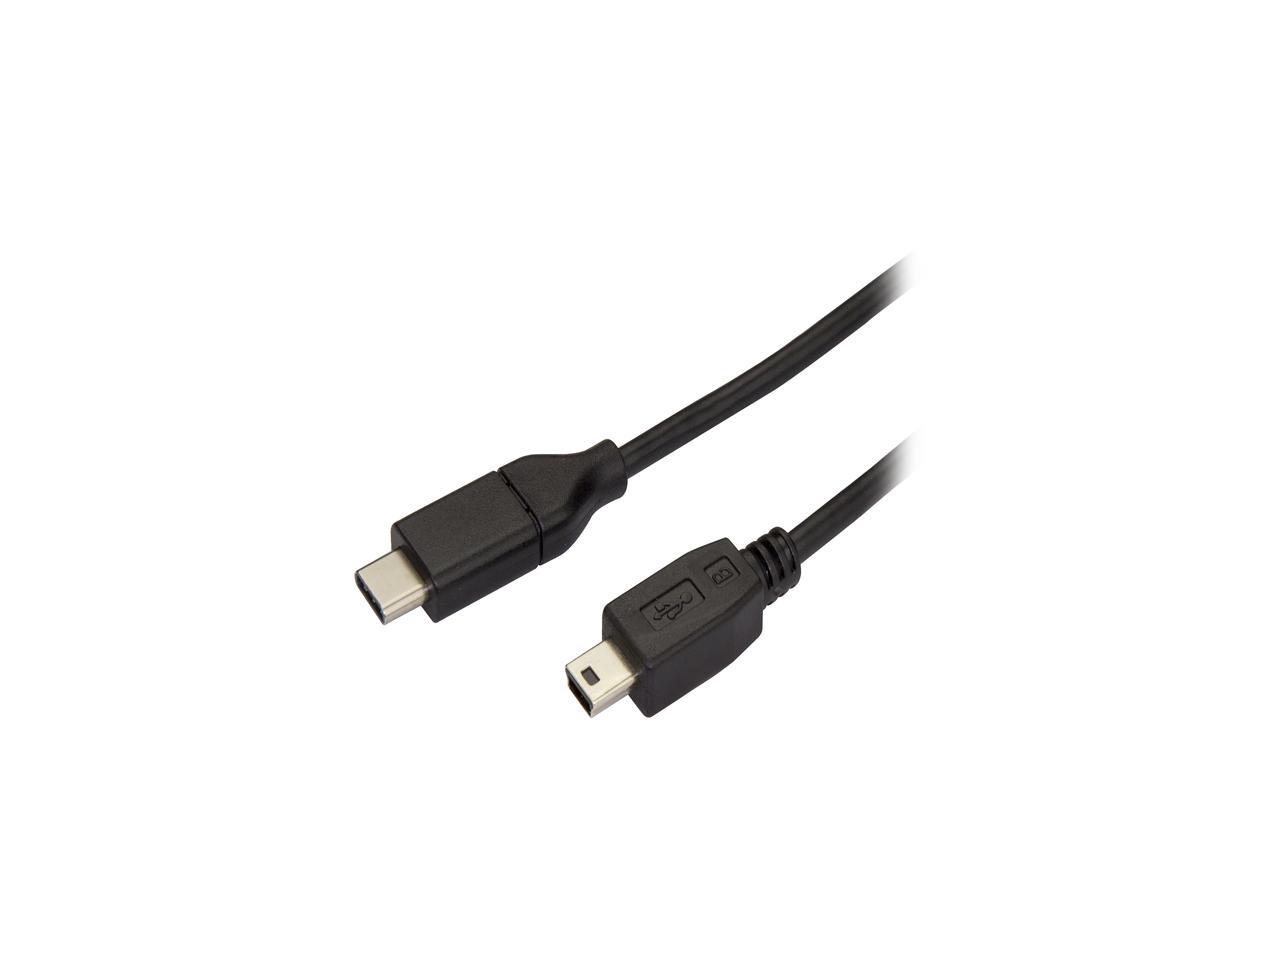 StarTech USB2CMB2M USB C to Mini USB Cable - 6 ft / 2m - M/M - USB 2.0 - Mini USB Cord - USB C to Mini B Cable - USB Type C to Mini USB